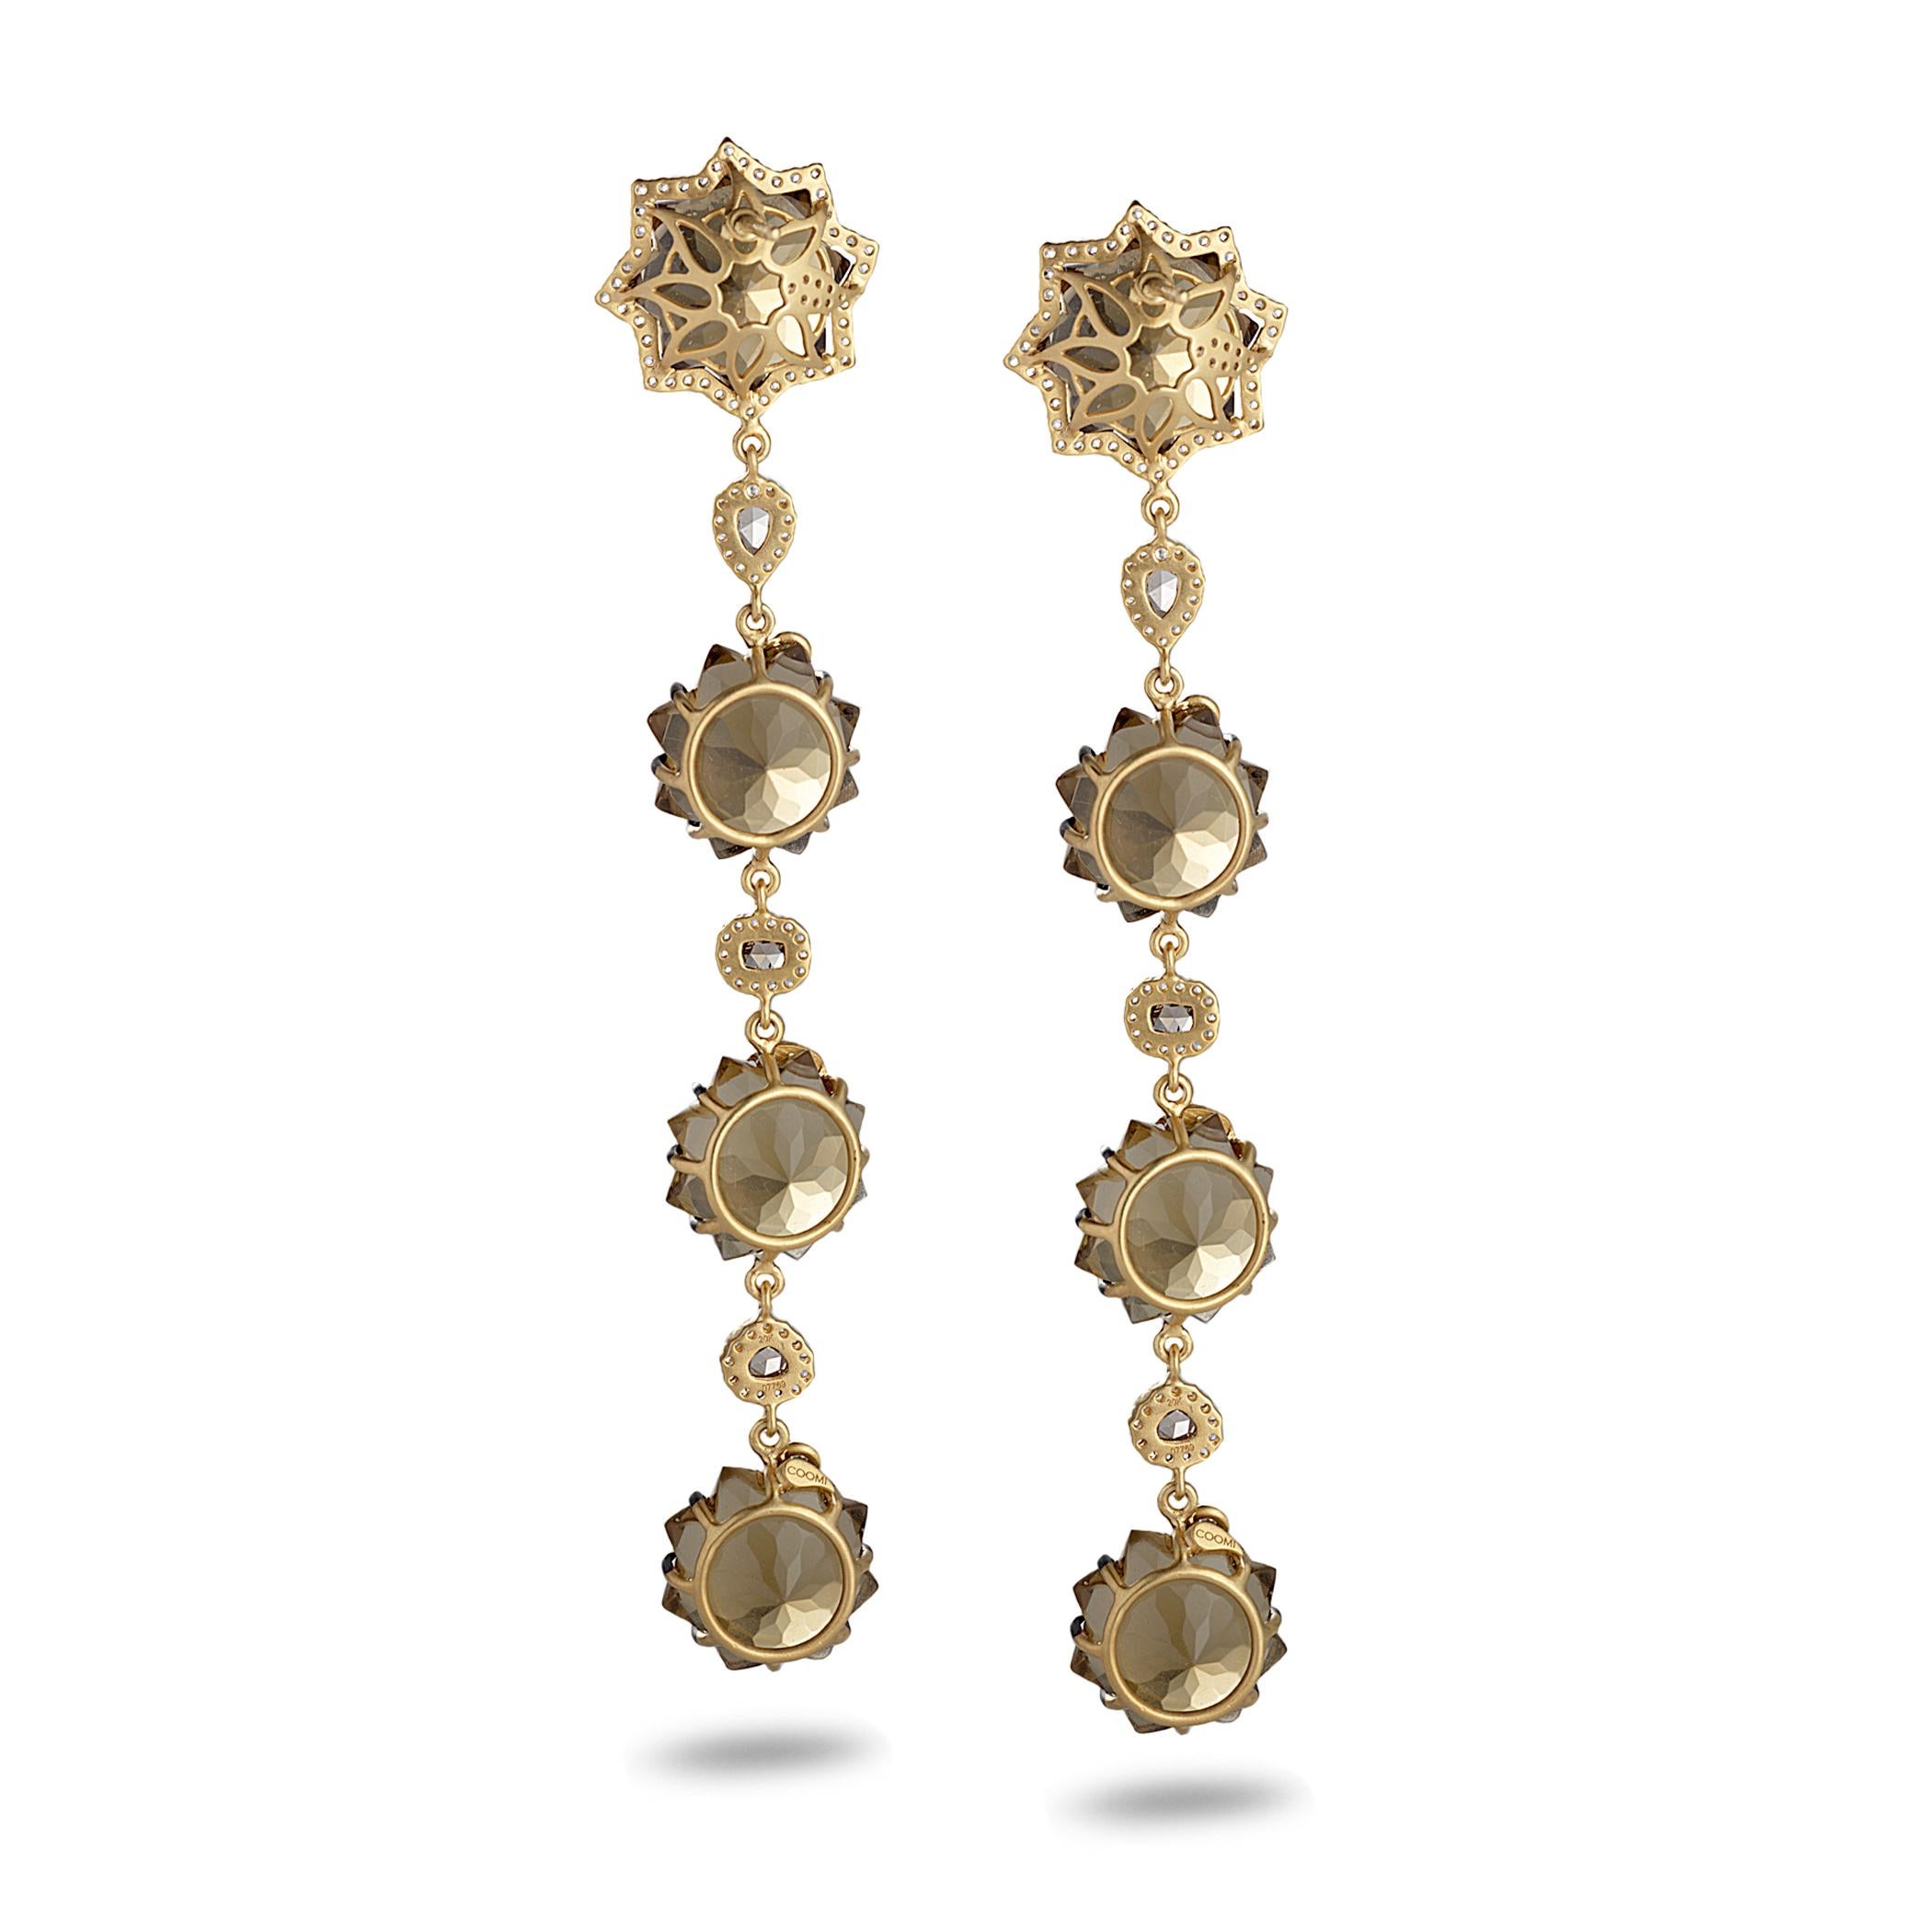 Sagrada Kaleidoskop-Ohrringe aus 20 Karat Gelbgold mit 62,11 Karat Cognac-Quarz und 1,83 Karat Diamanten im Rosenschliff. Die Coomi Sagrada Kollektion wurde von den Türen der Passionsfassade inspiriert, einer der drei großen Fassaden der Sagrada